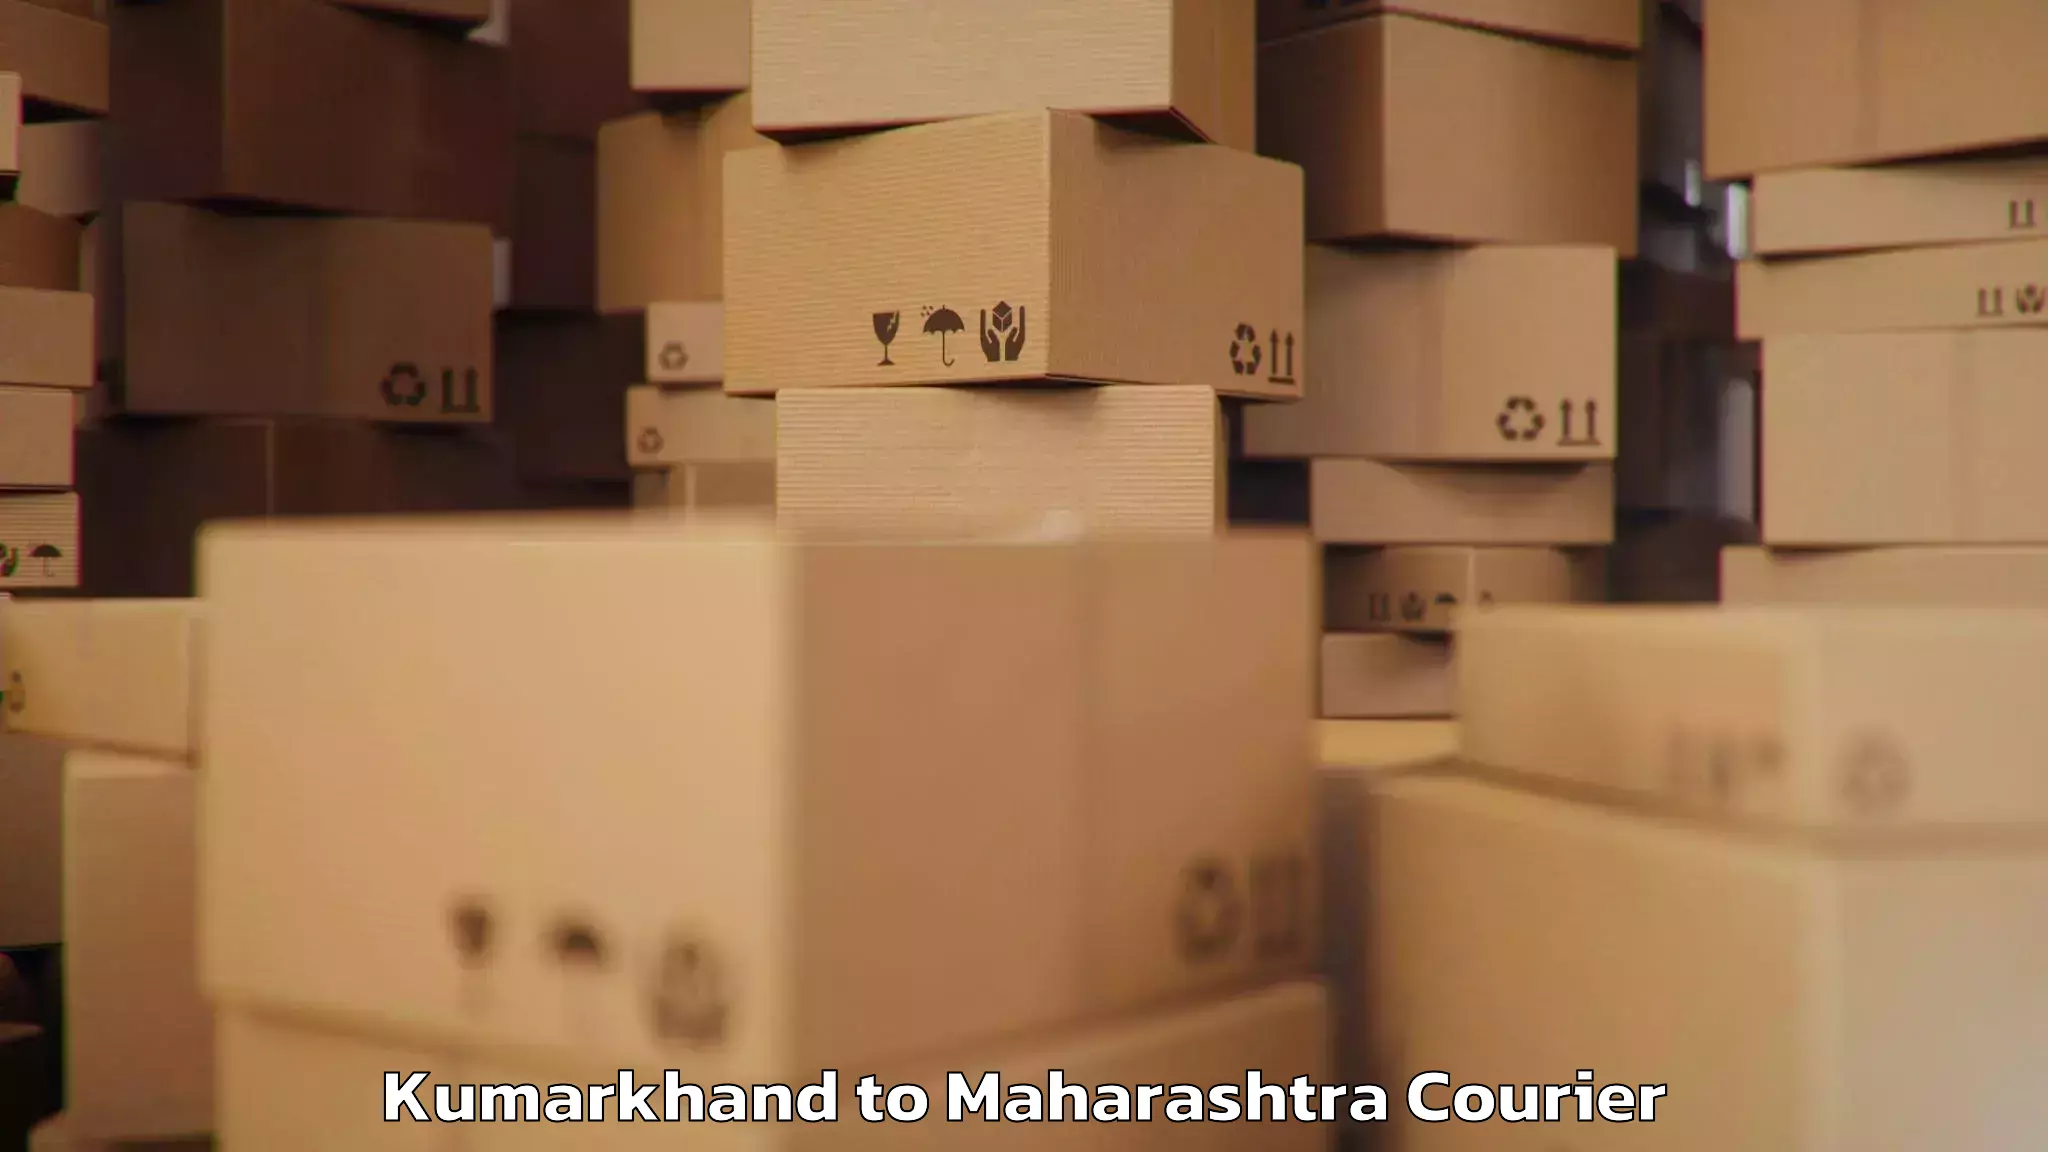 Baggage shipping calculator Kumarkhand to Shirur